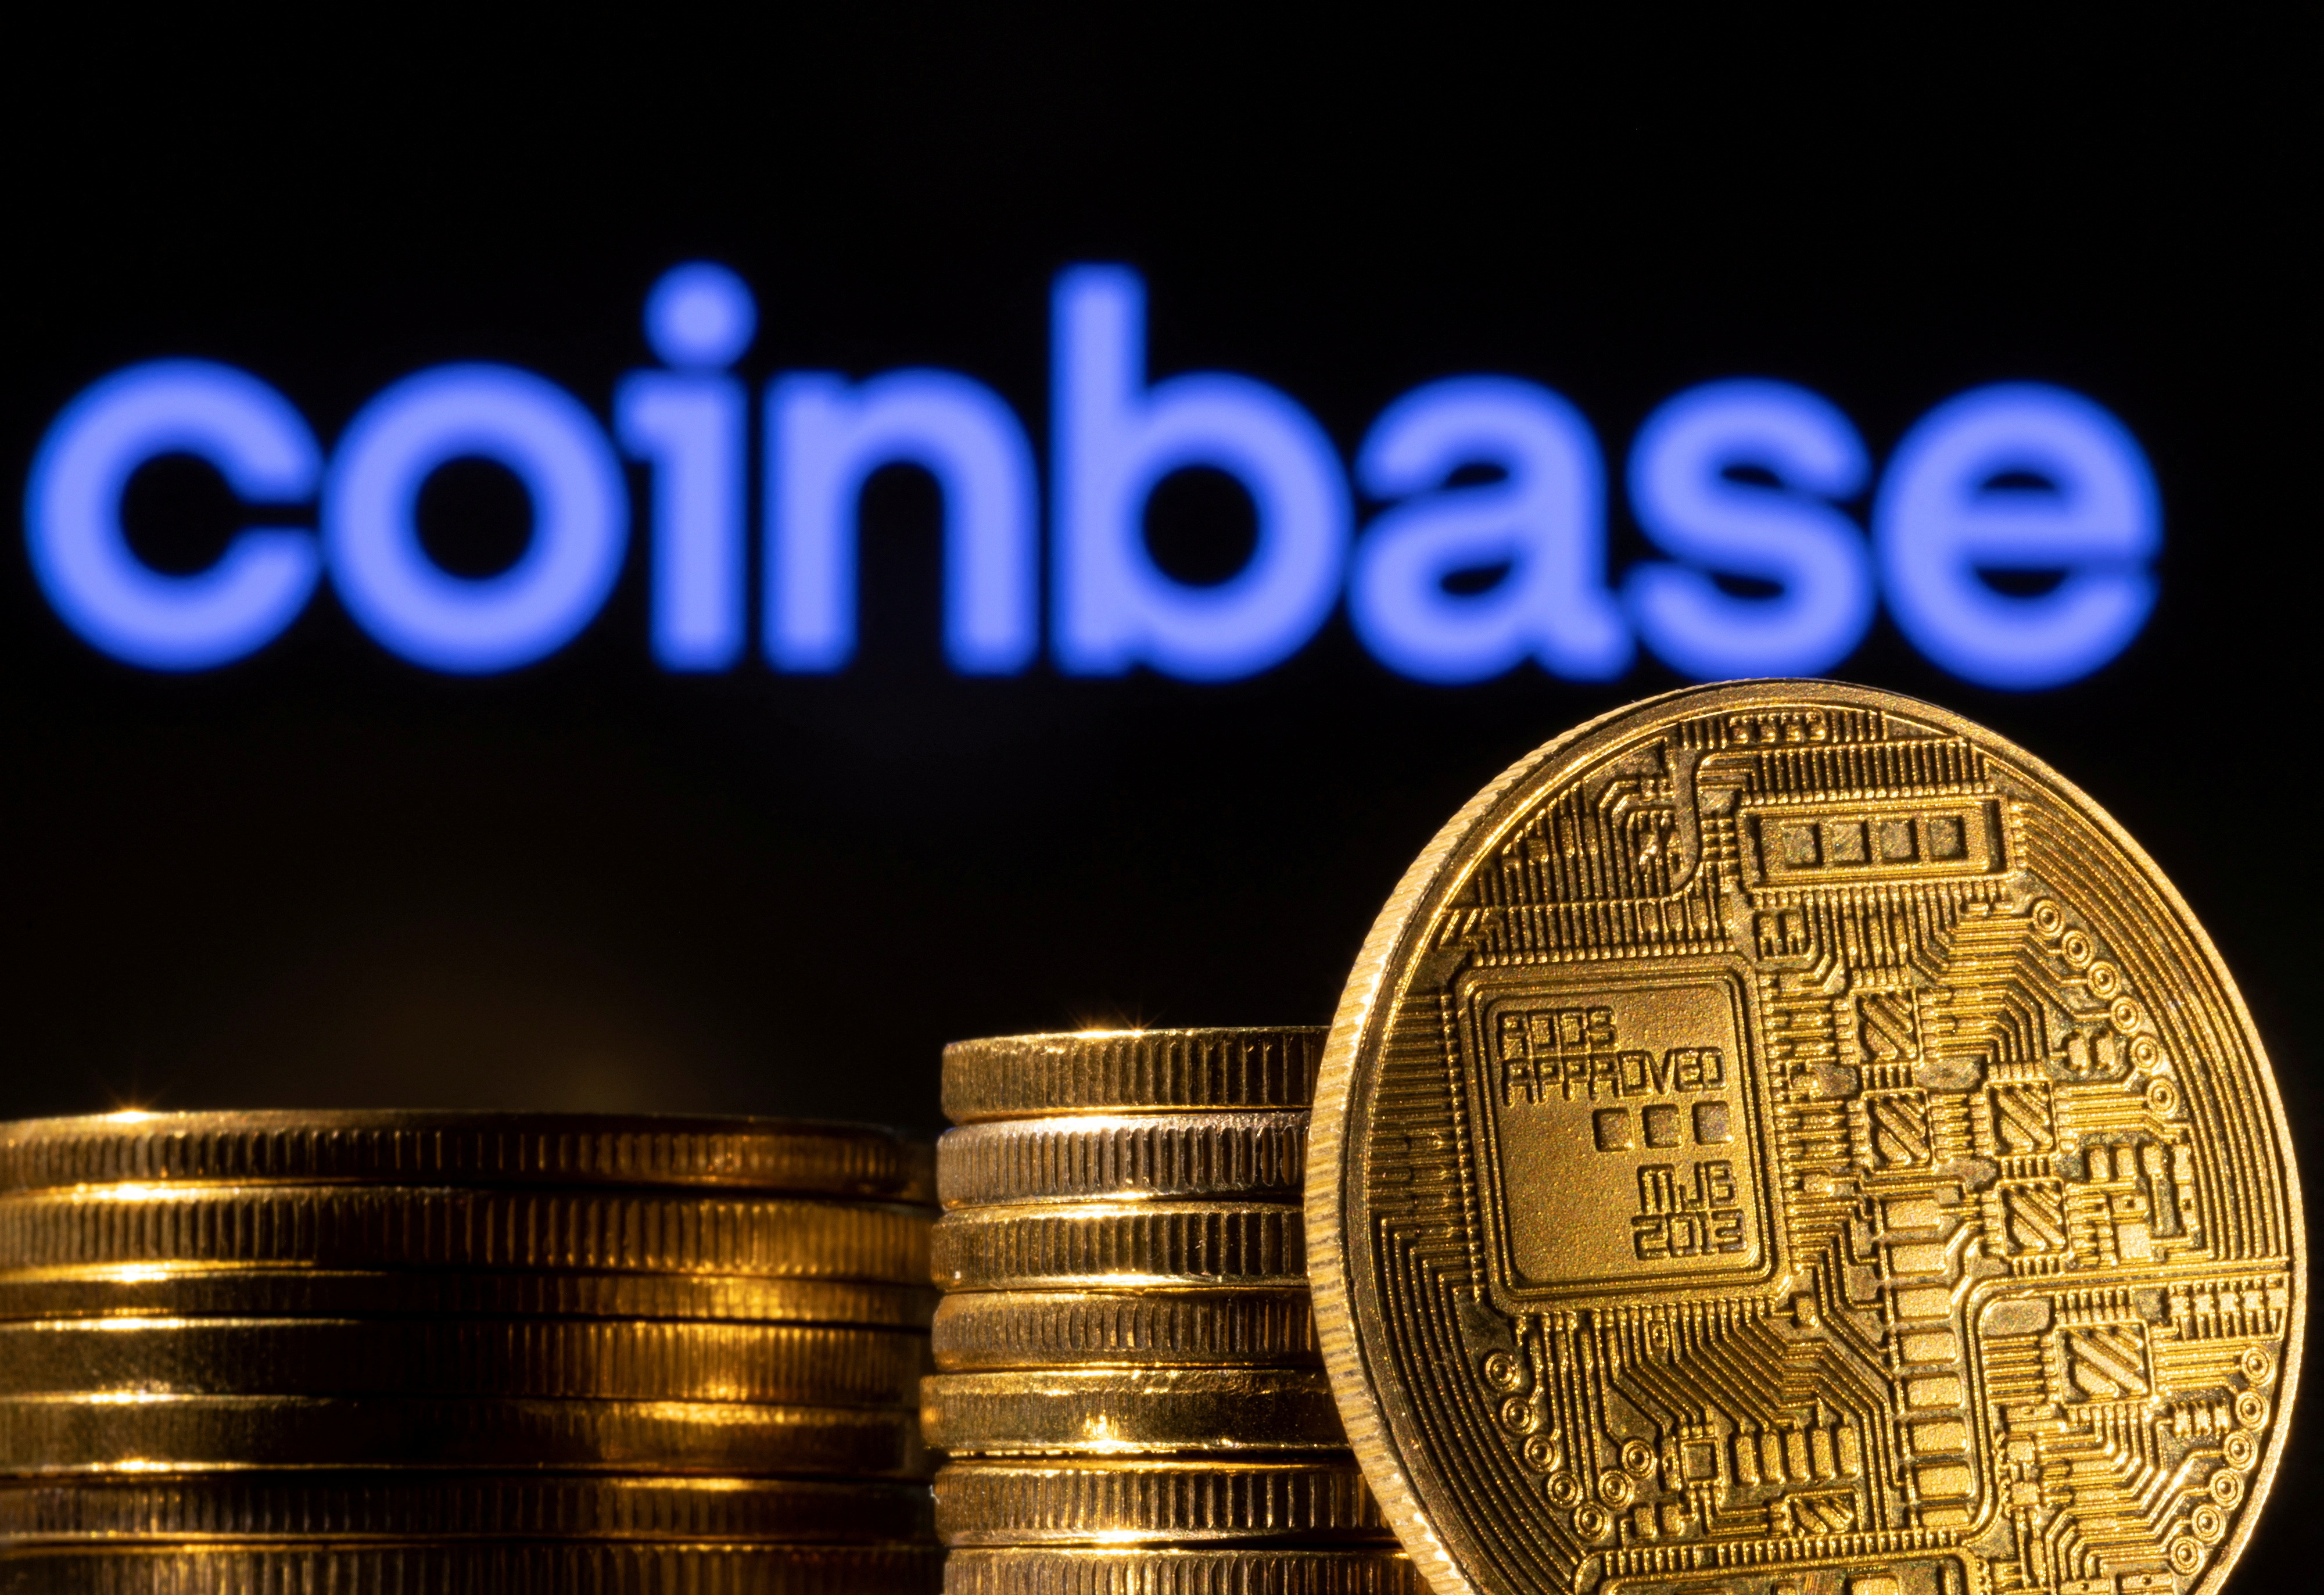 L'illustration montre une représentation de la crypto-monnaie et du logo Coinbase